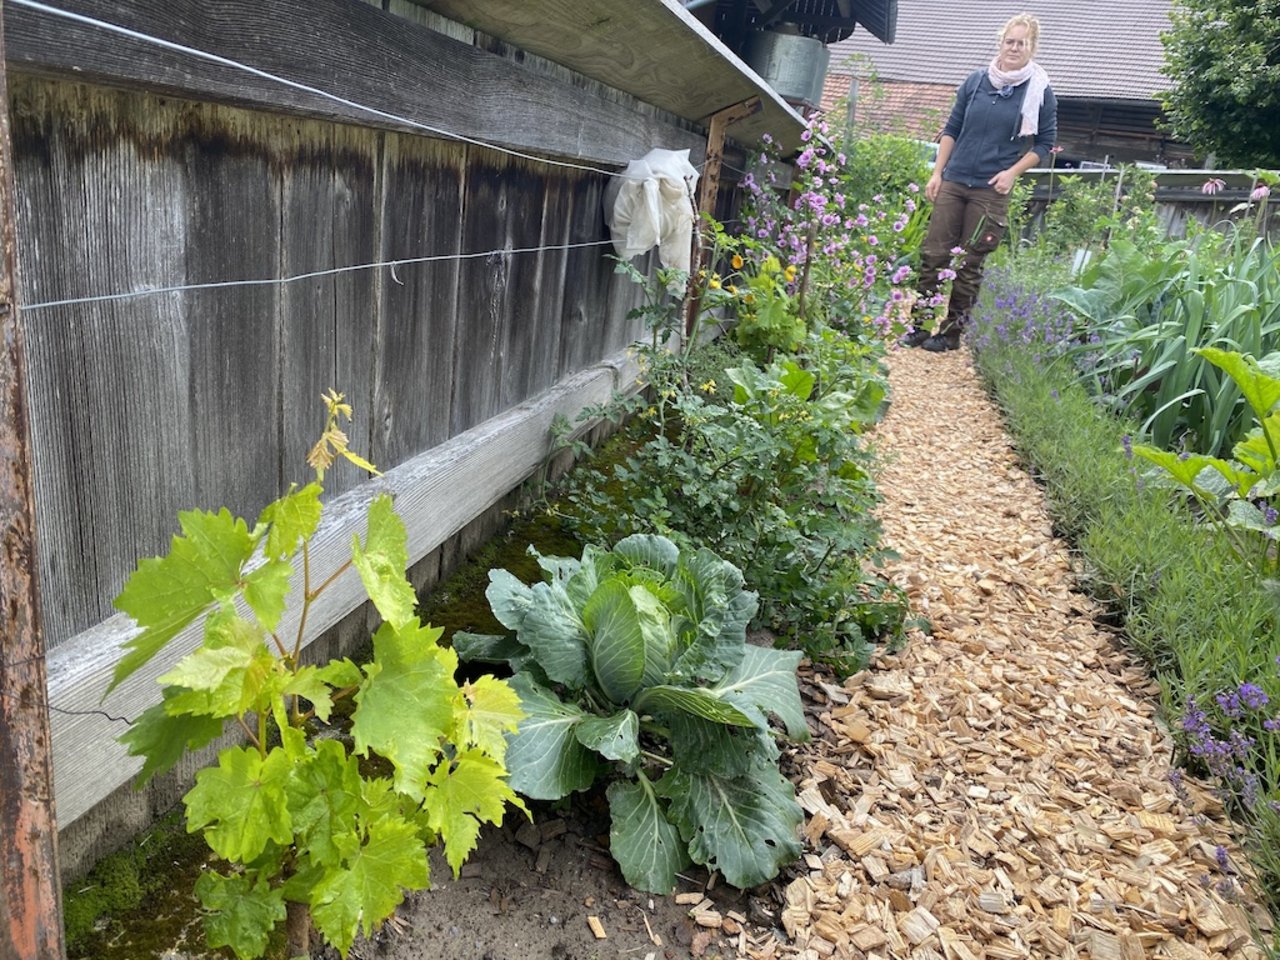 Am unteren Gartenrand, entlang des hölzernen Zauns, hat Anina Marbot ein buntes Sammelsurium verschiedener Gemüsesorten gepflanzt. 